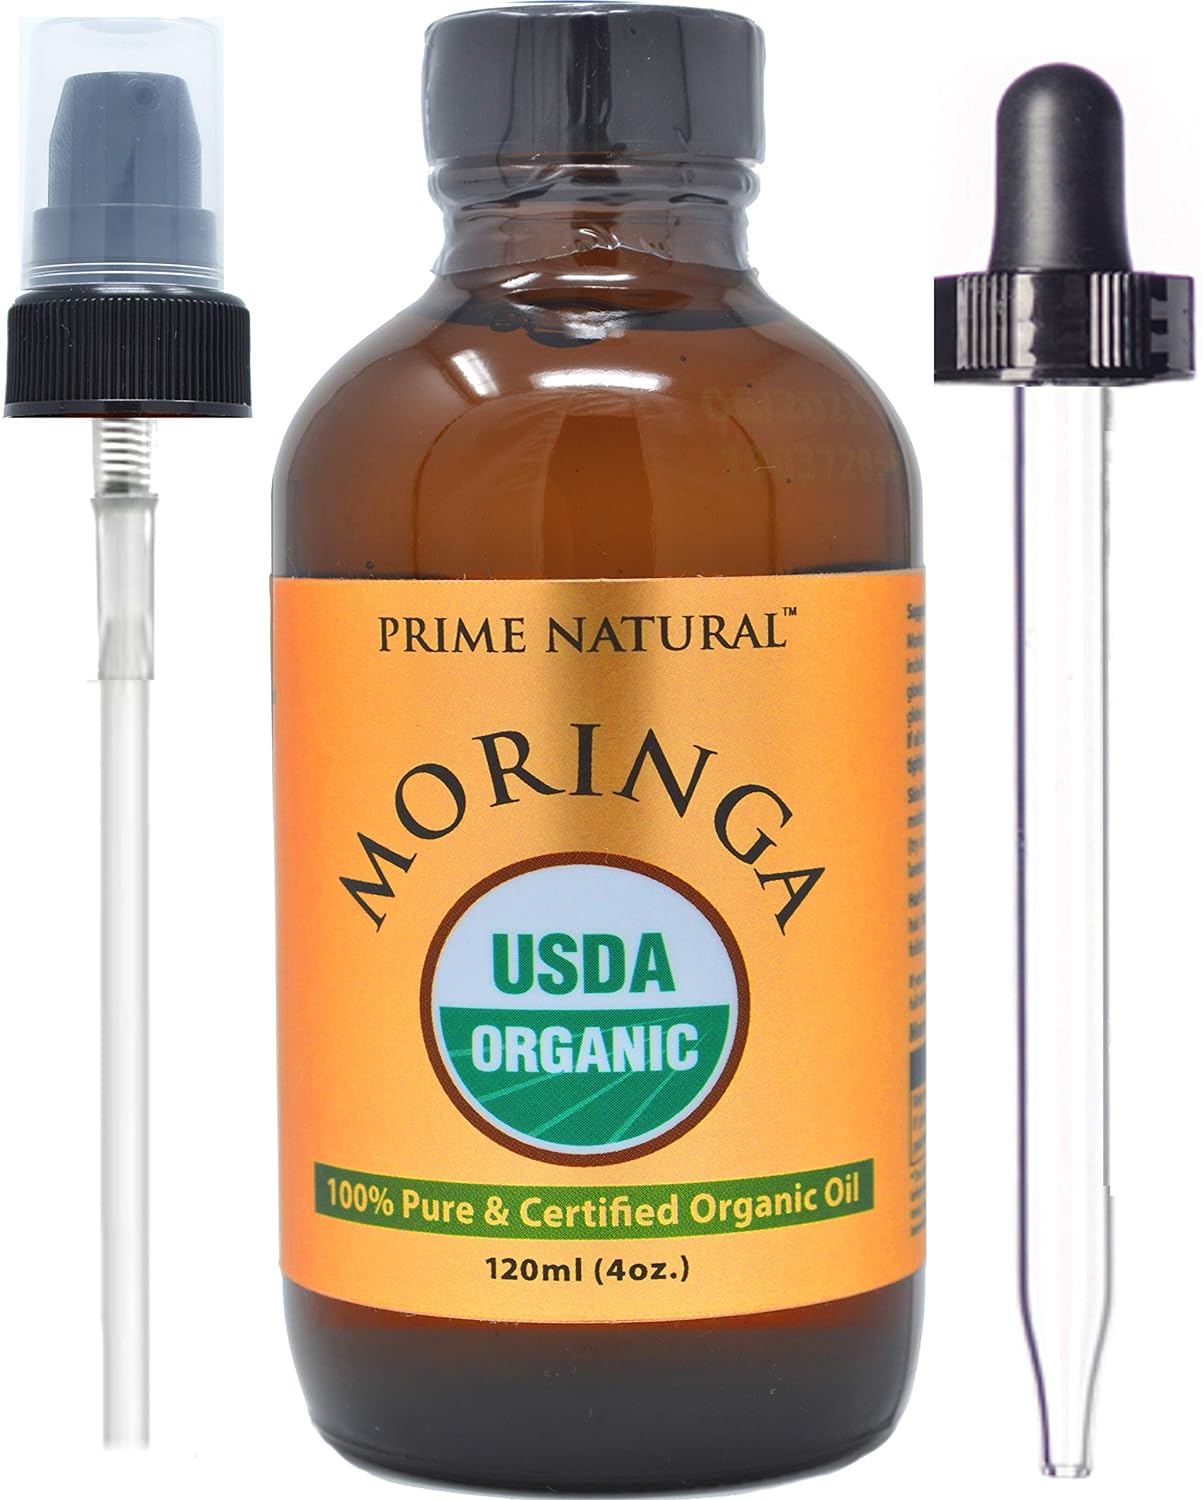 PRIME NATURAL Organic Moringa Oil